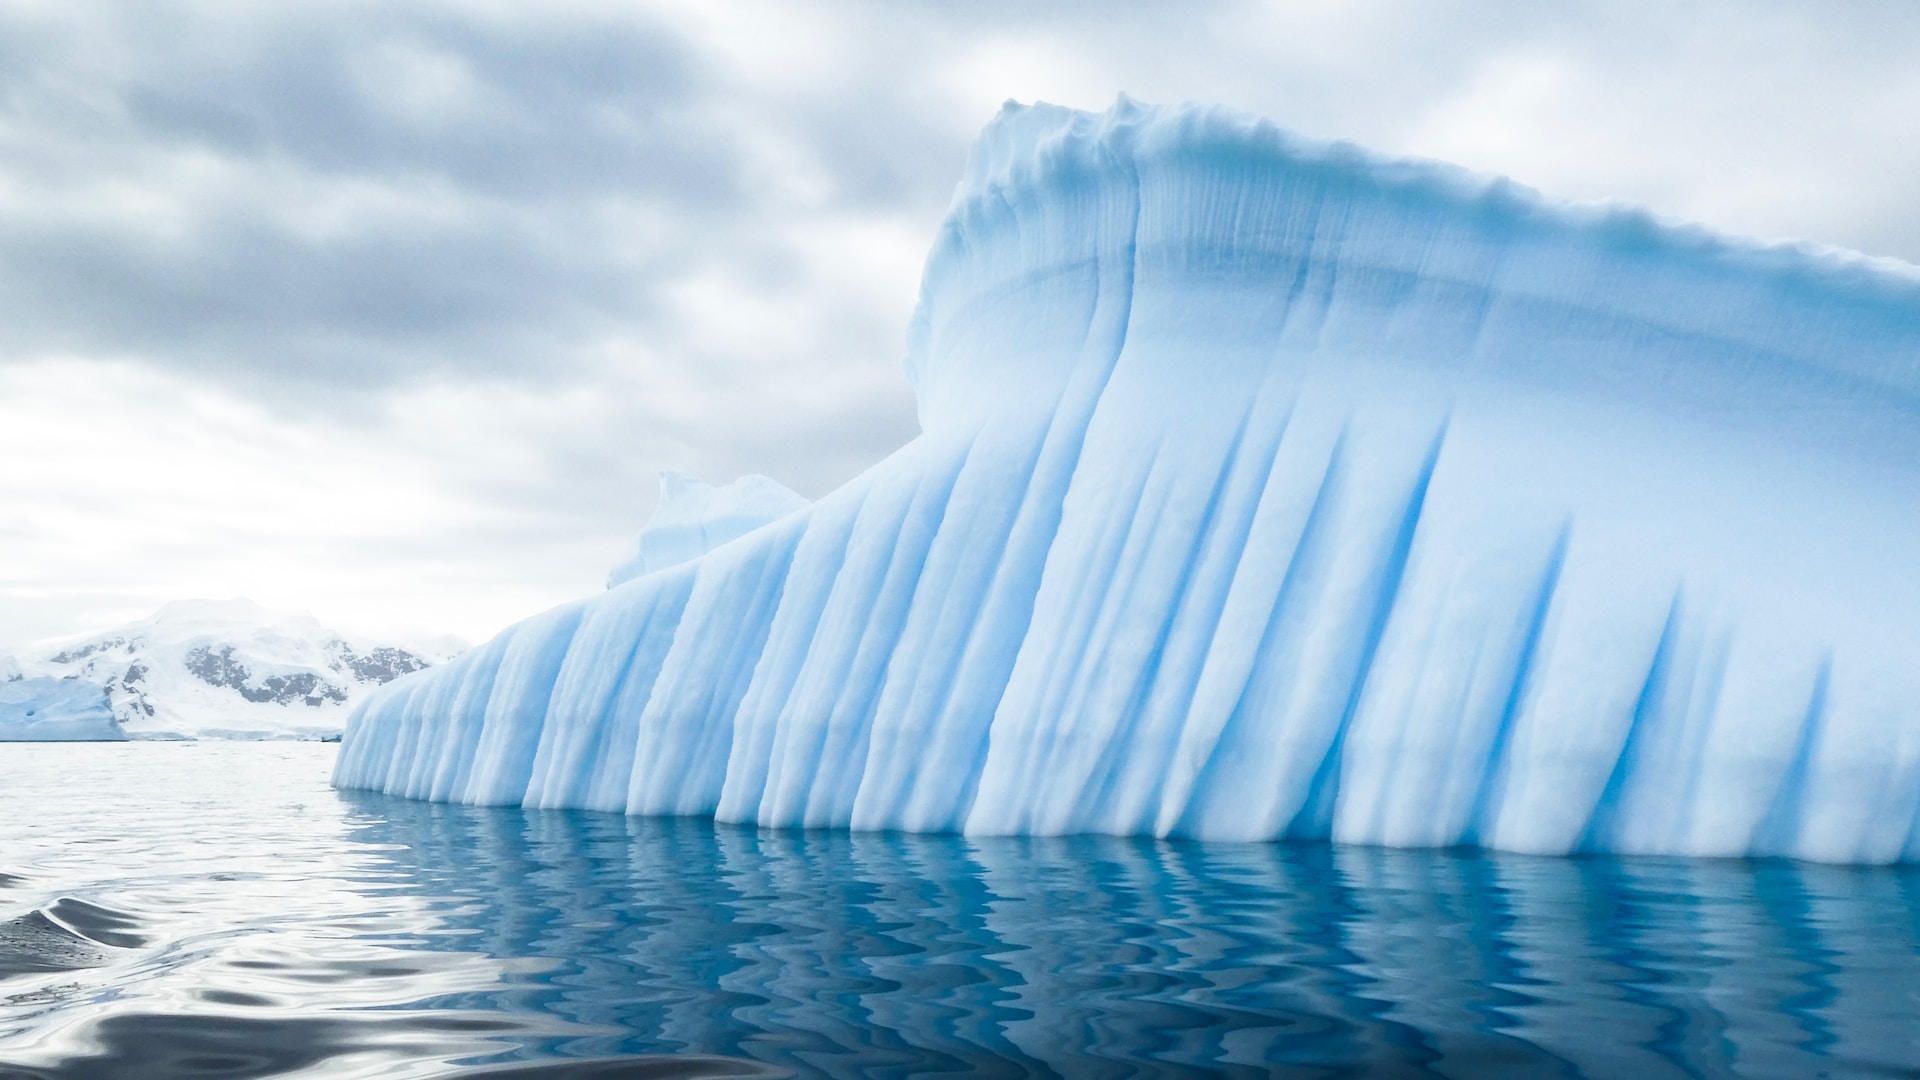 Calotta glaciale Antartide occidentale: fusione ormai “inevitabile”